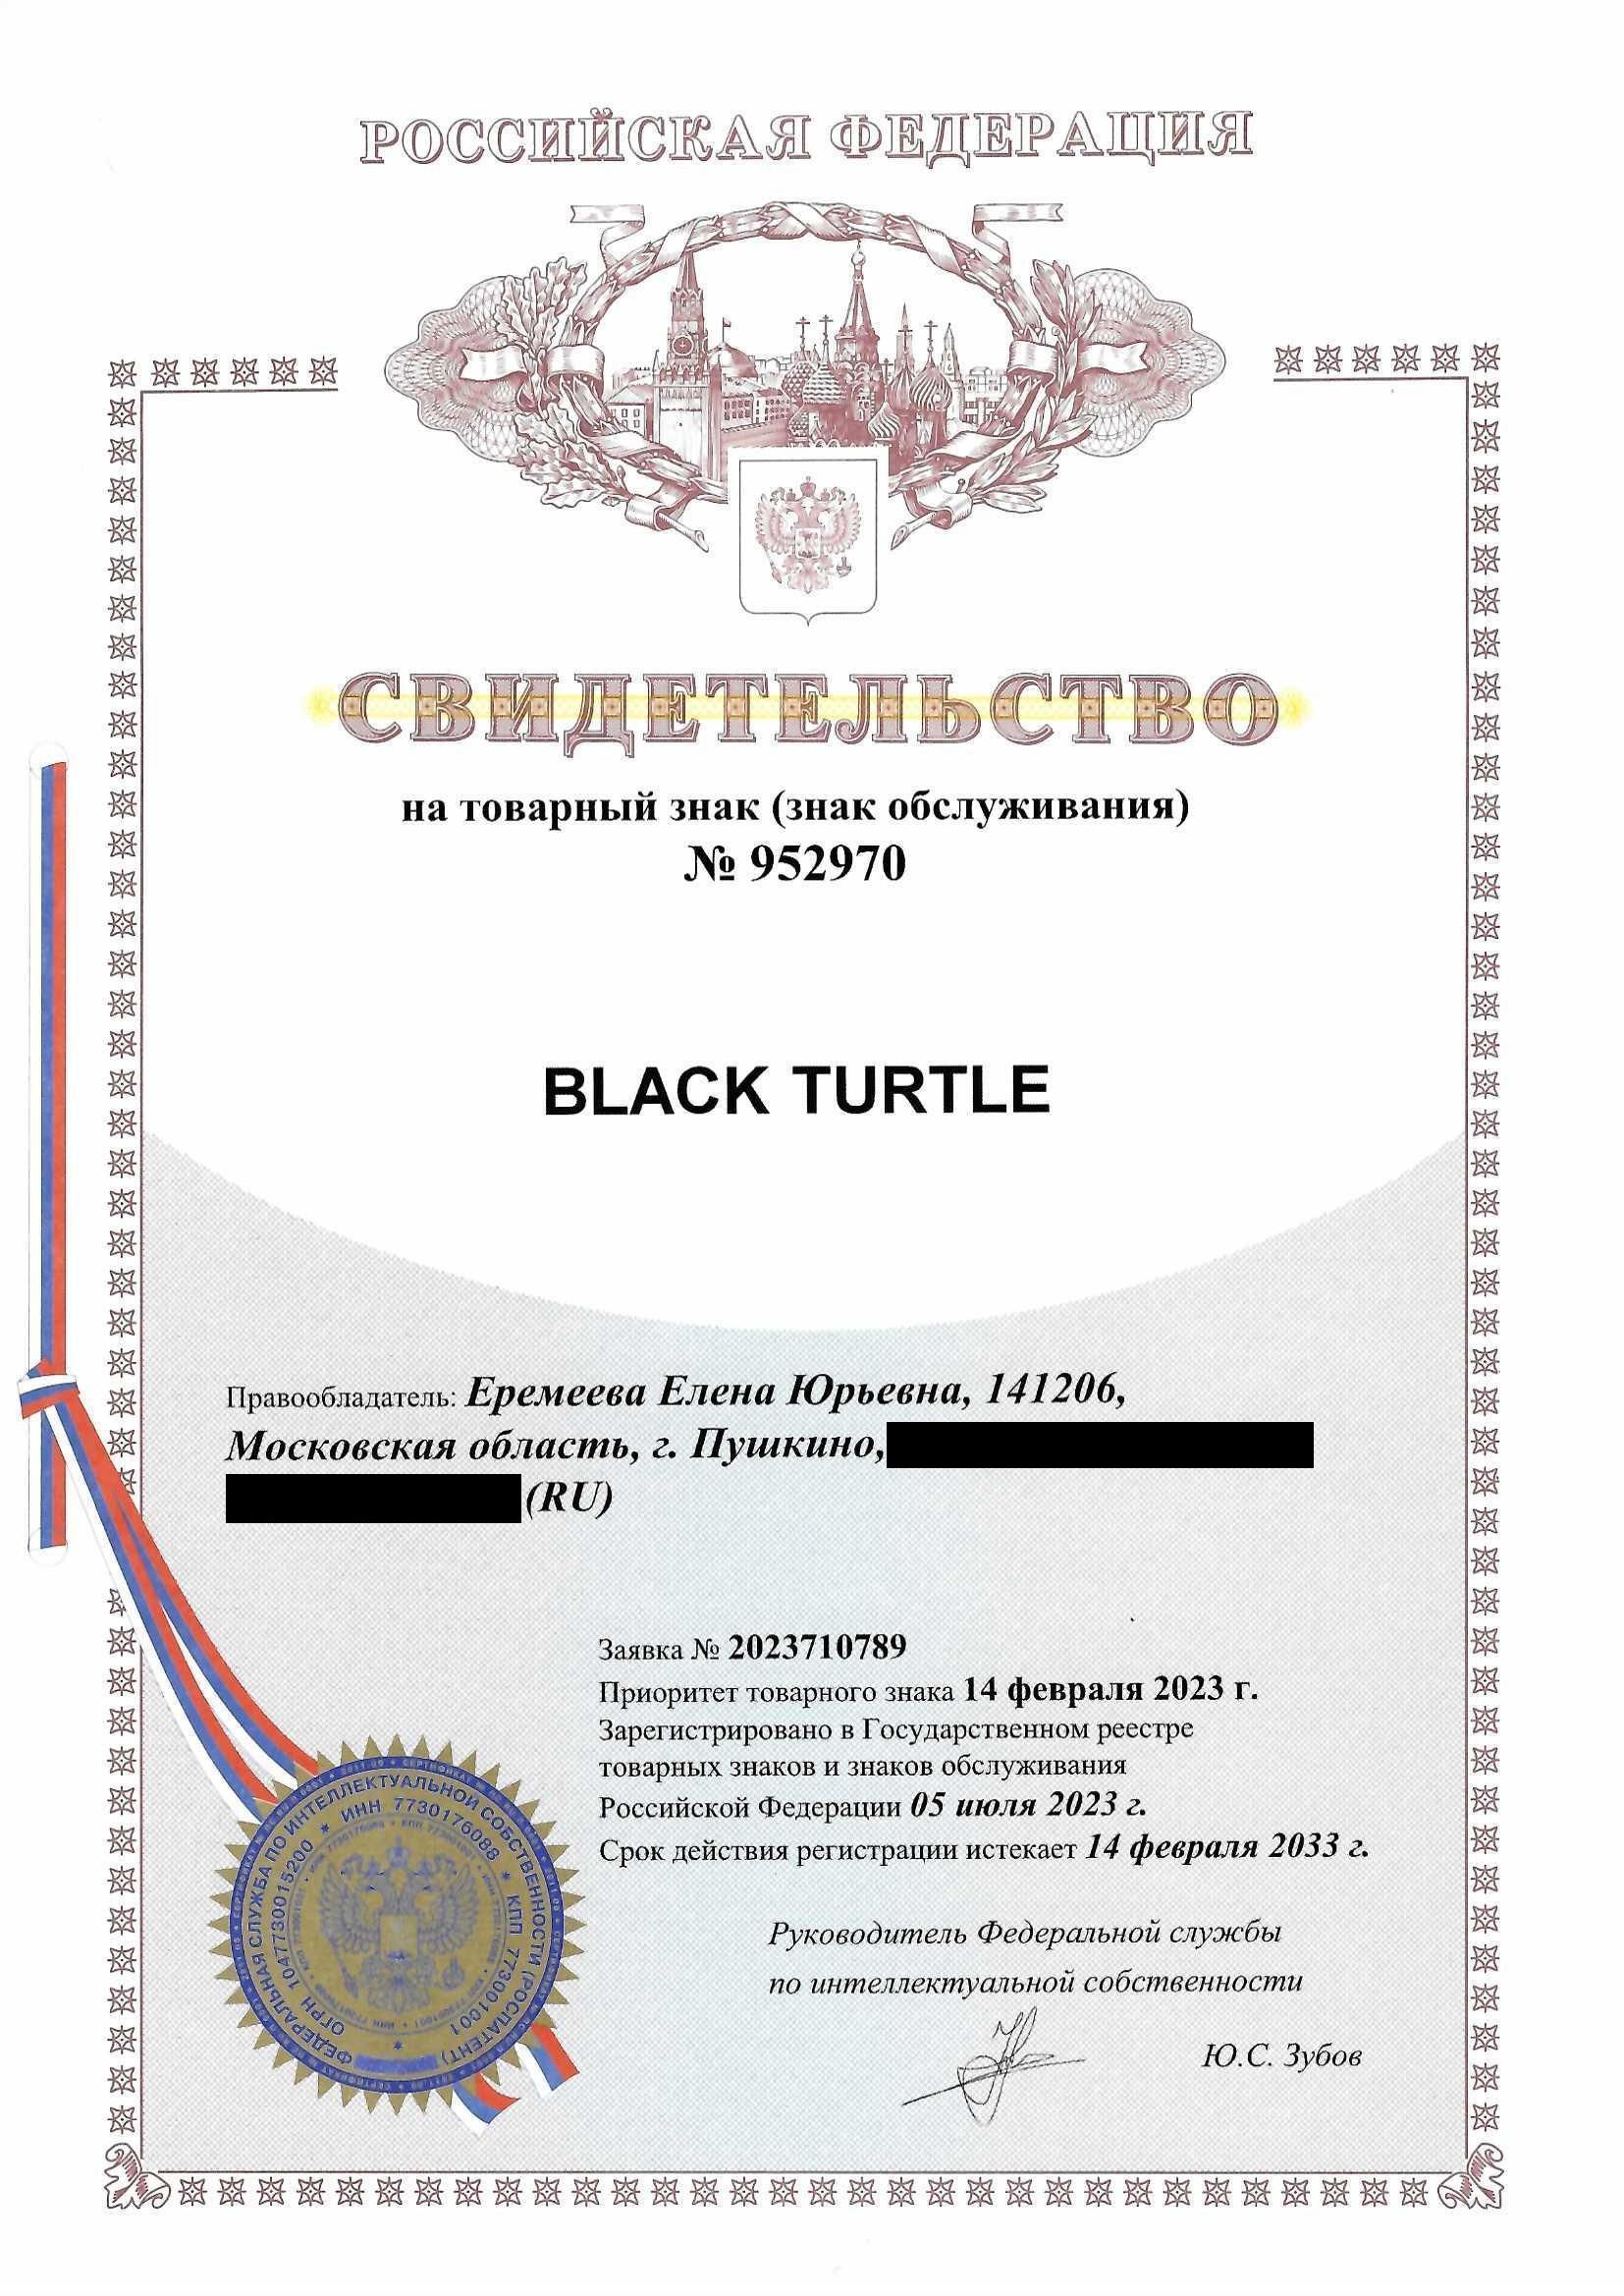 Товарный знак № 952970 – Black Turtle